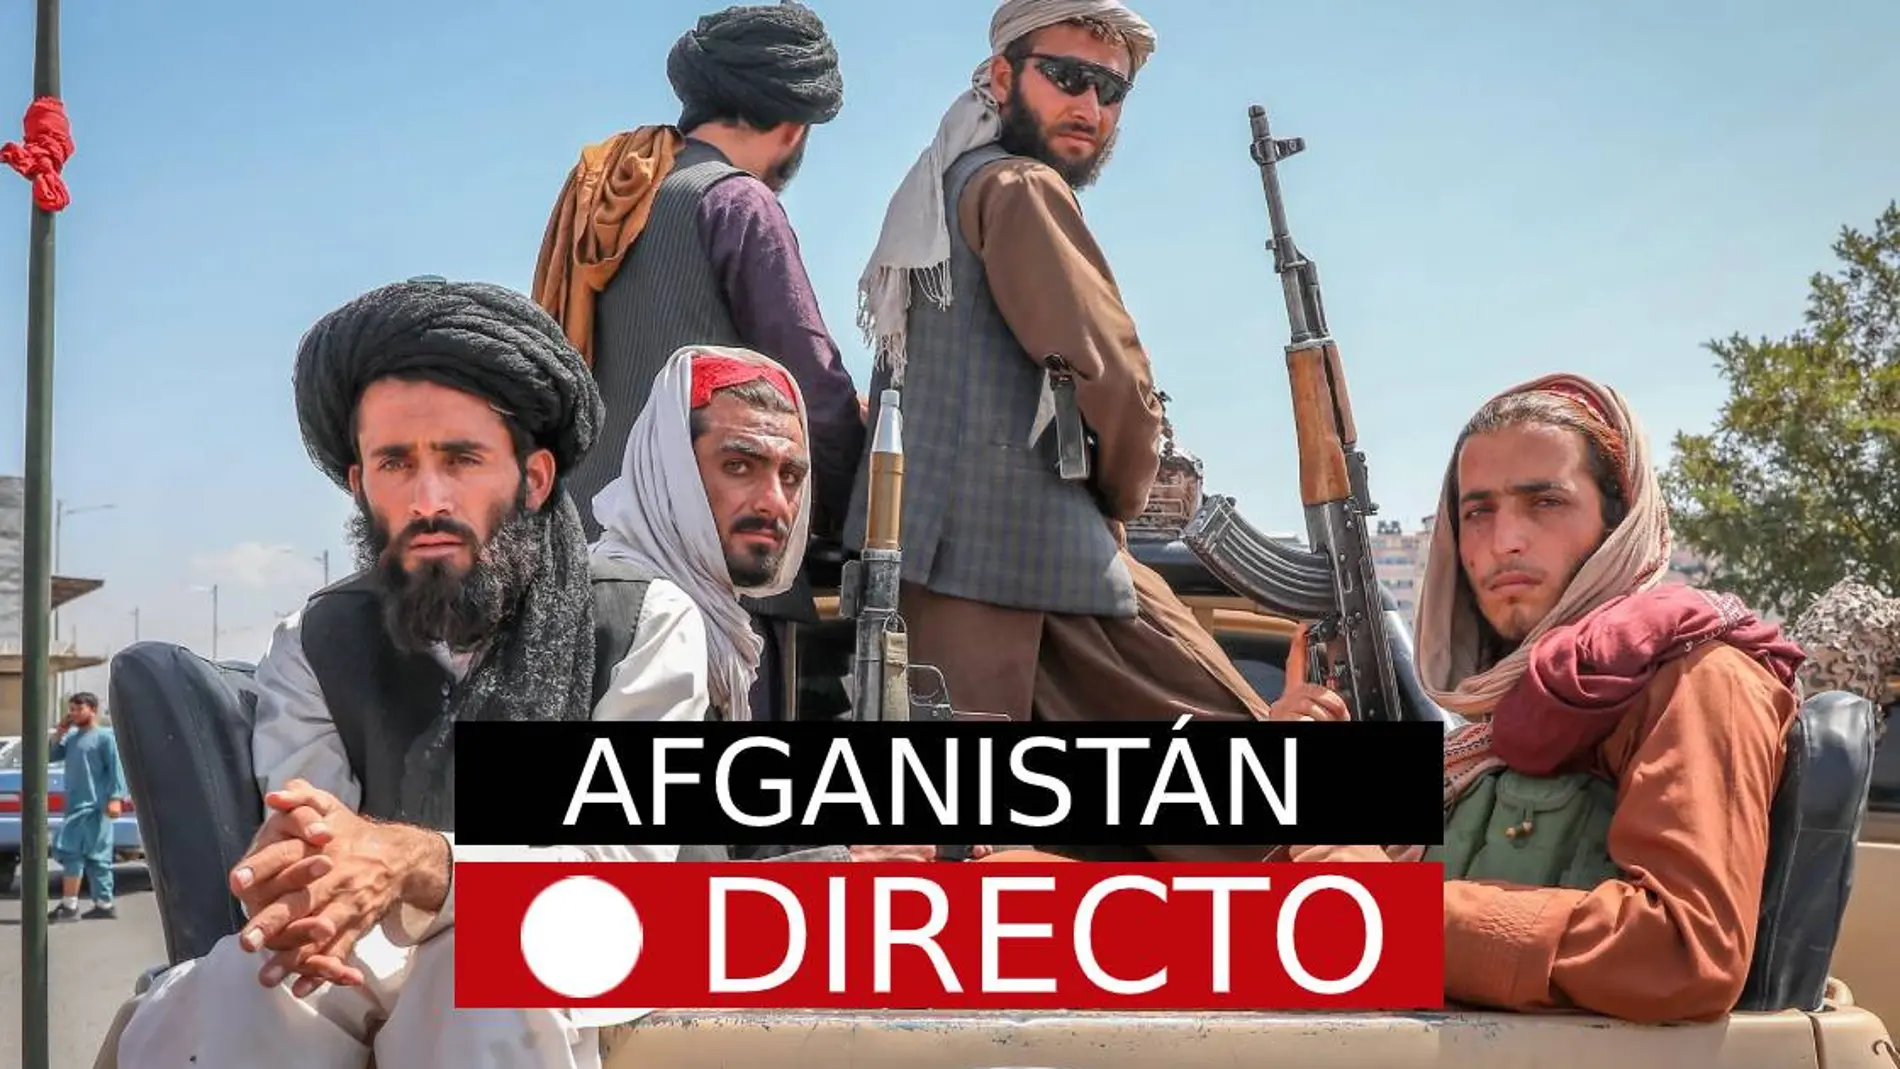 Últimas noticias sobre Afganistán en directo: los talibanes toman Kabul y la comunidad internacional comienza con las repatriaciones